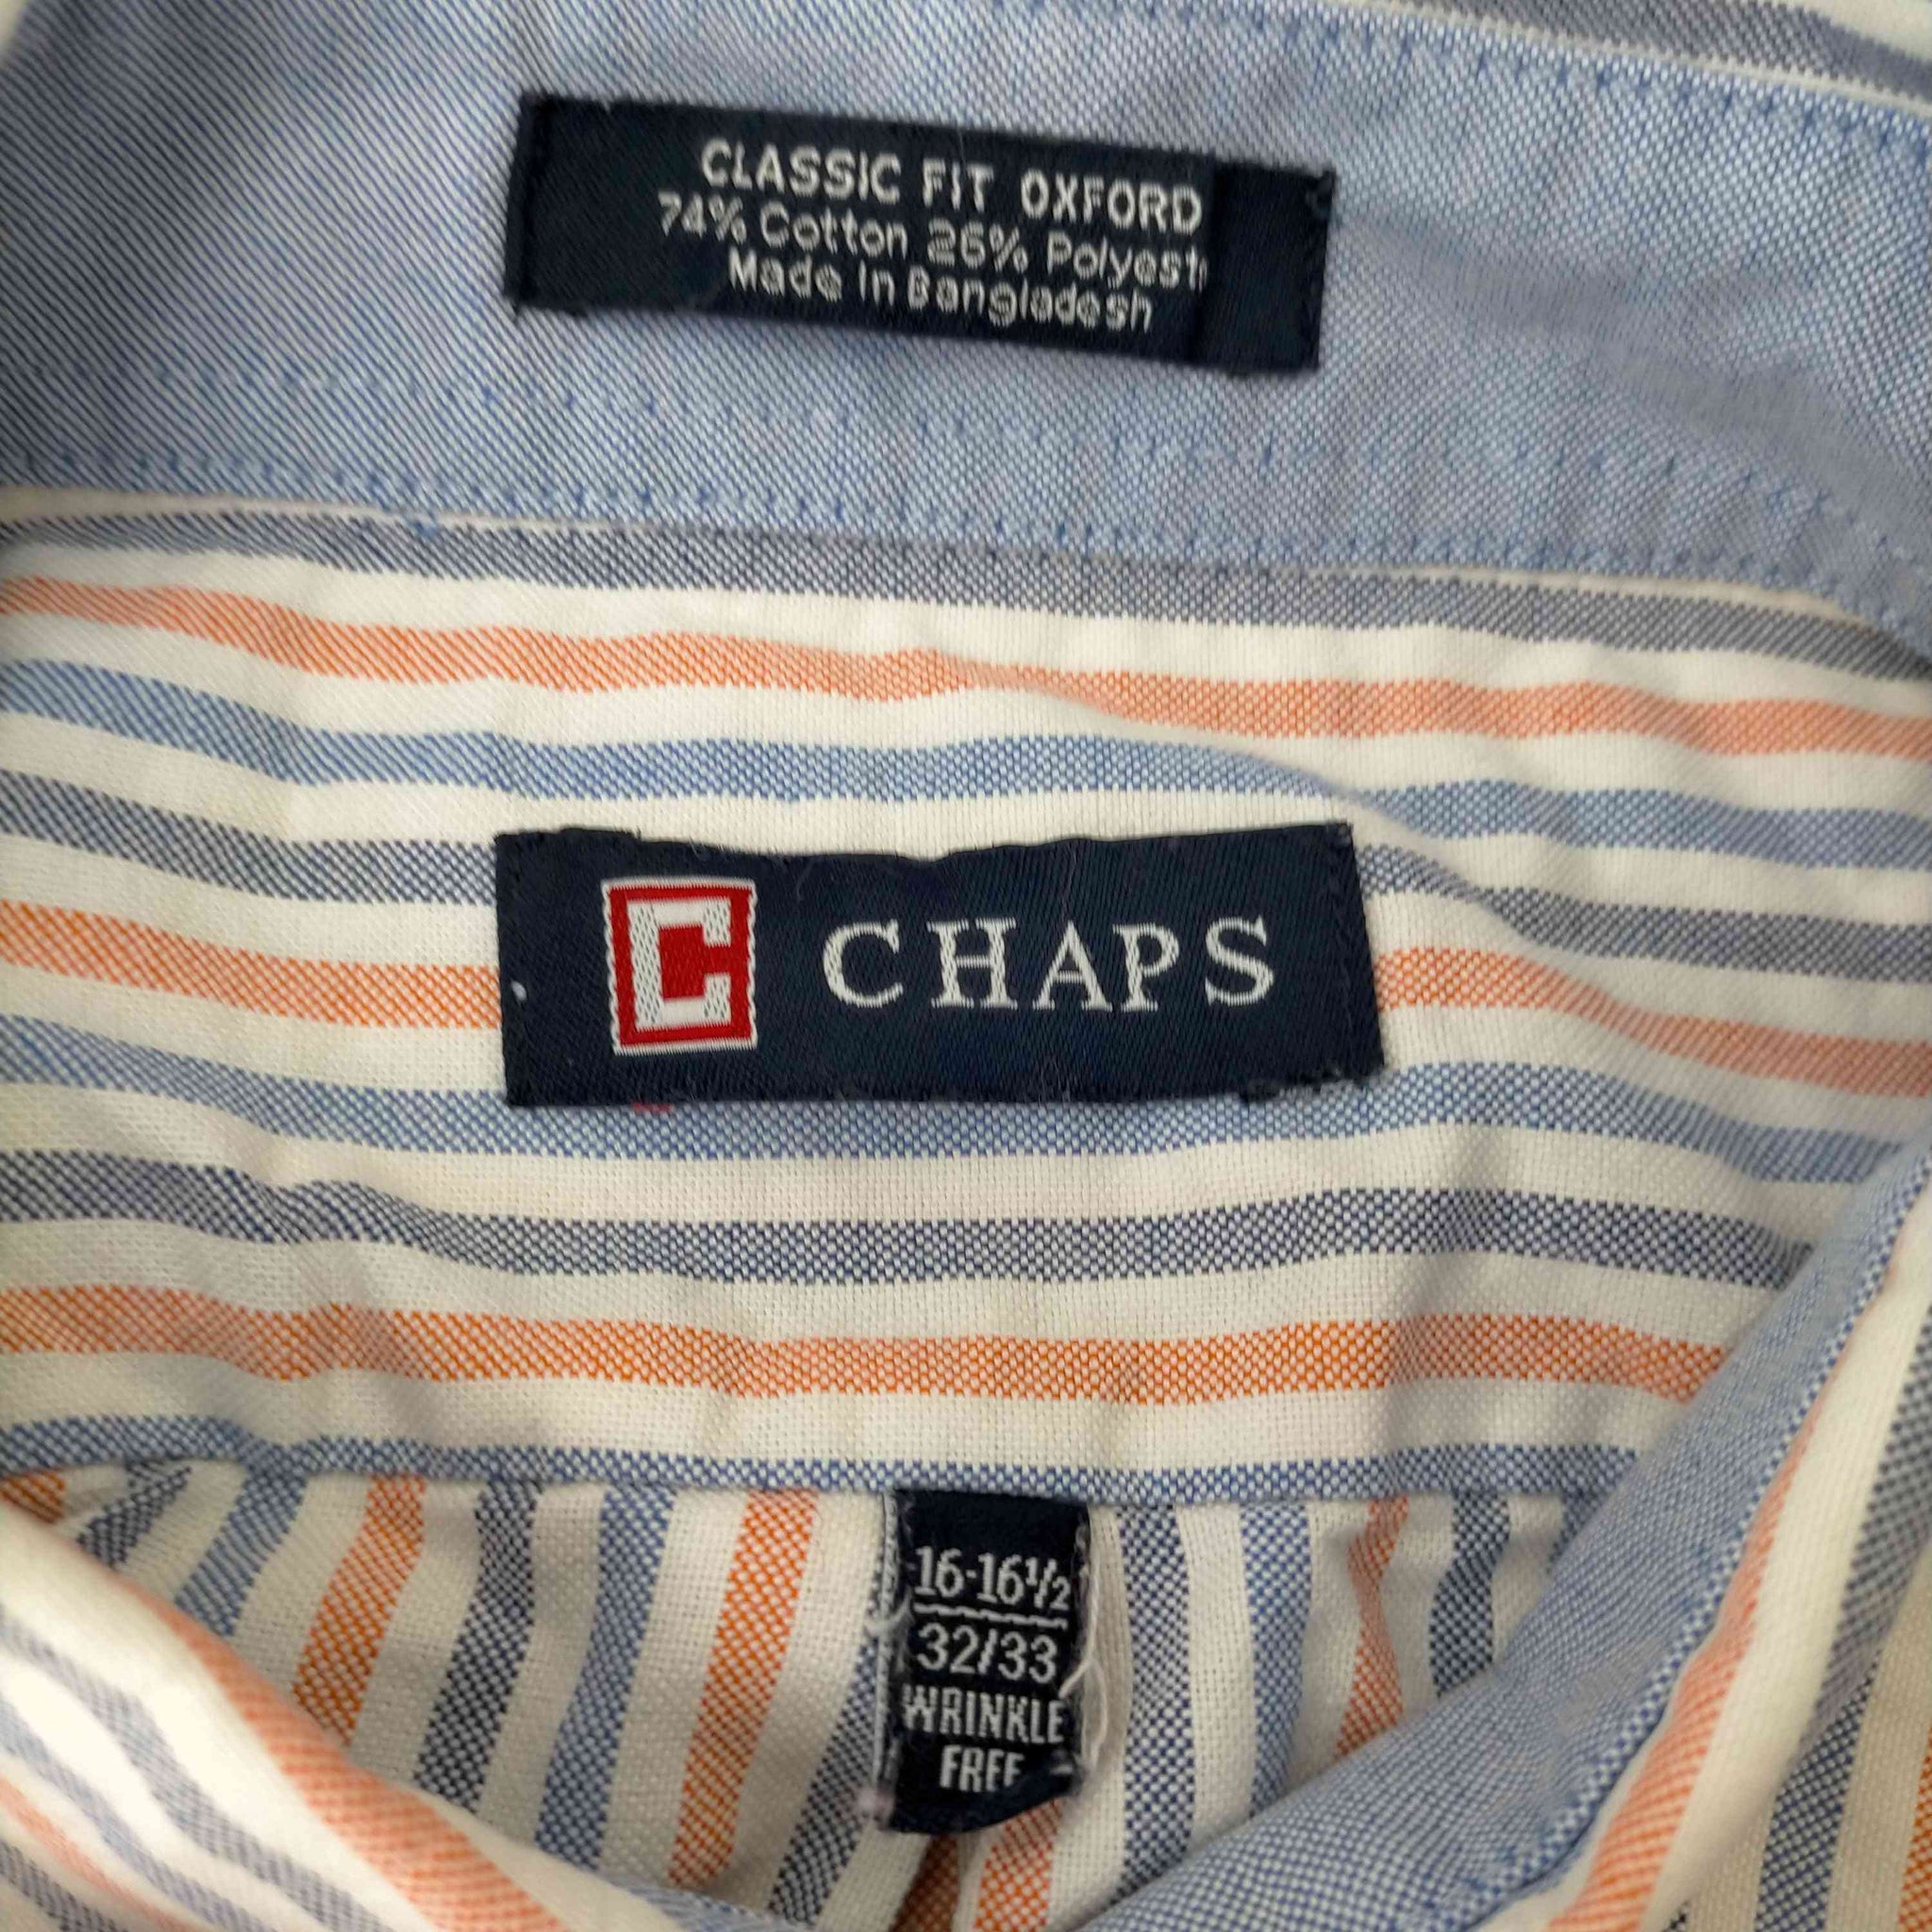 CHAPS(チャップス)ストライプ オックスフォードシャツ